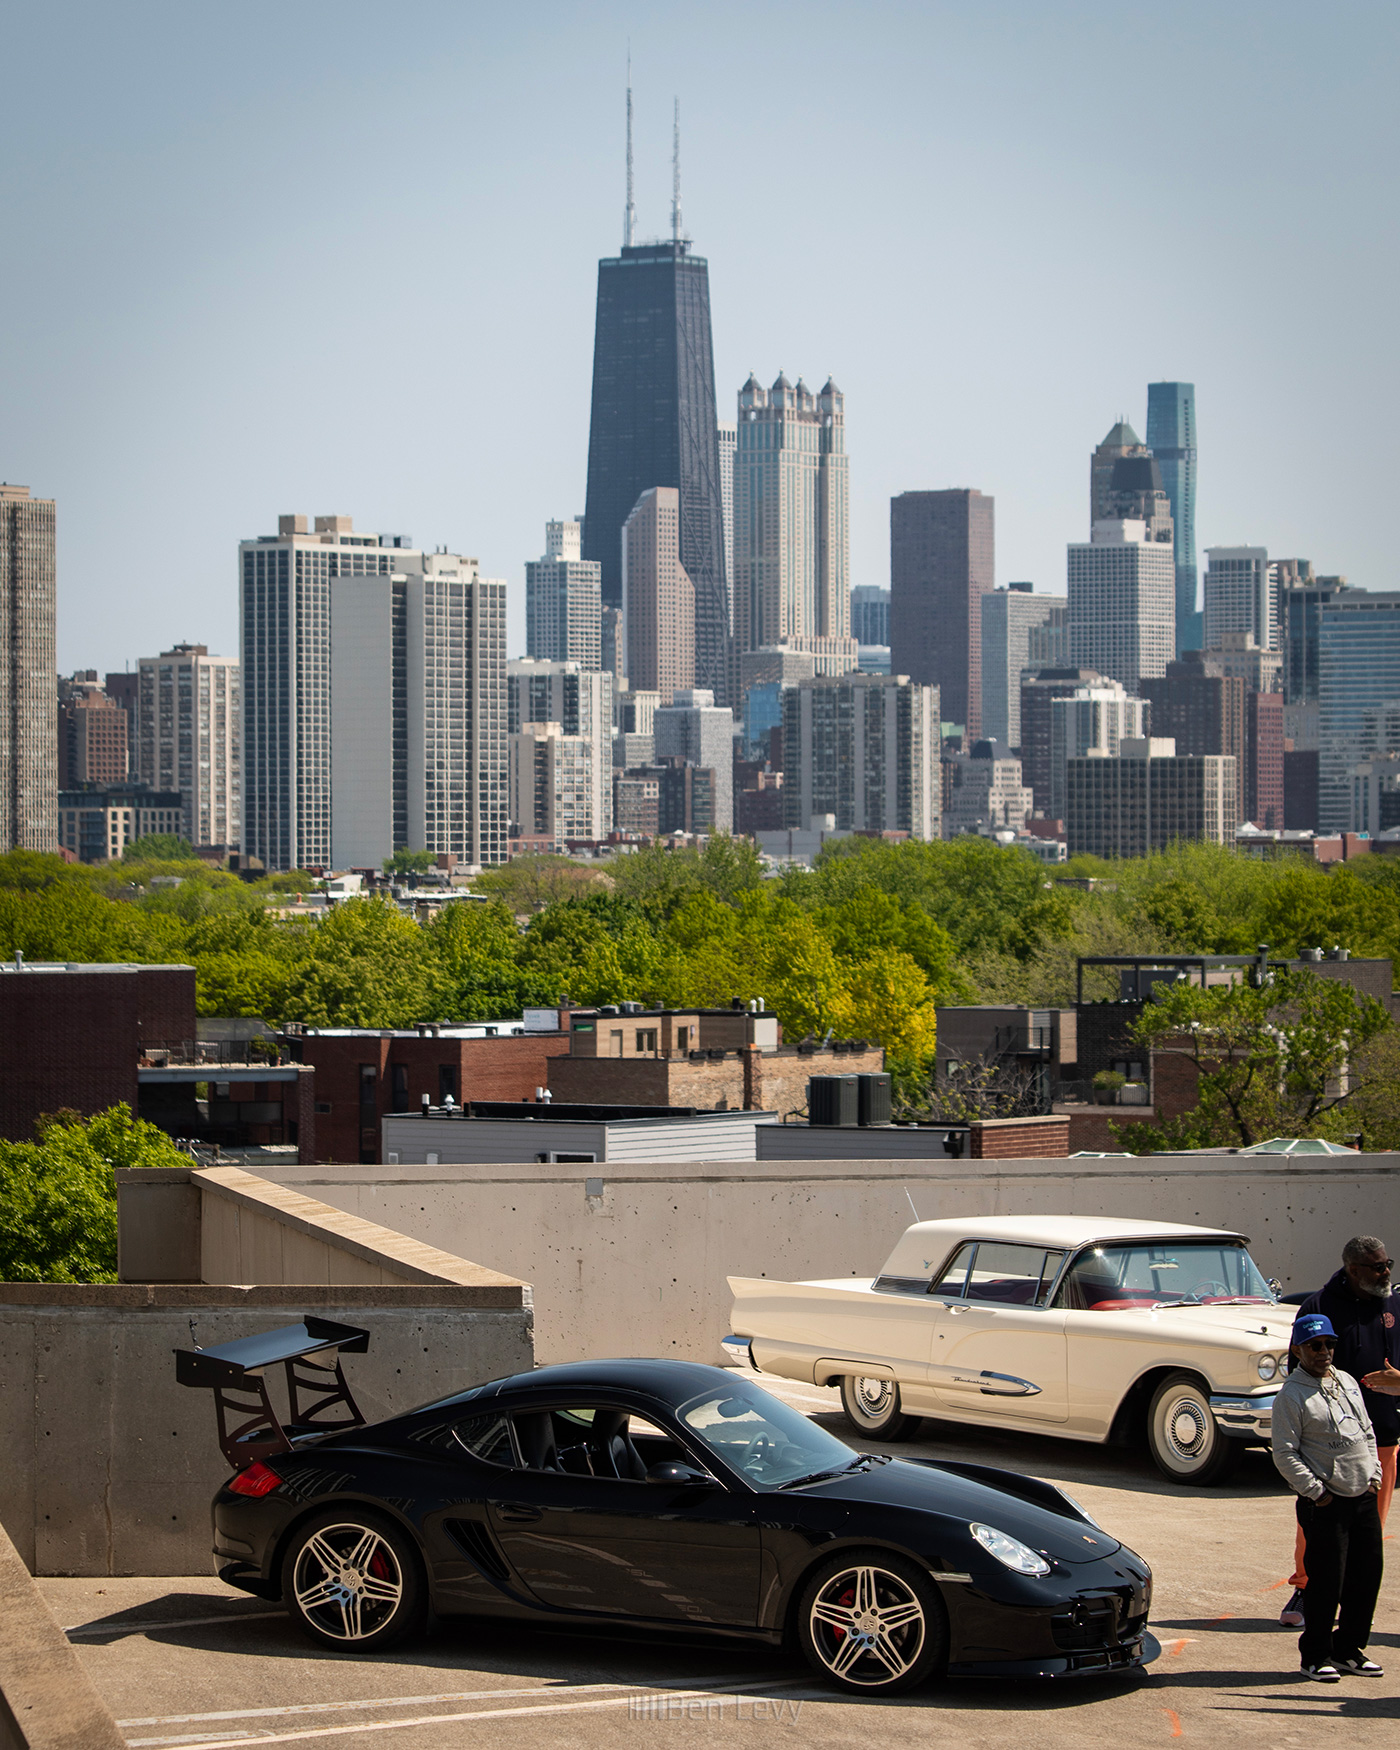 Black Porsche Cayman against the Chicago Skyline